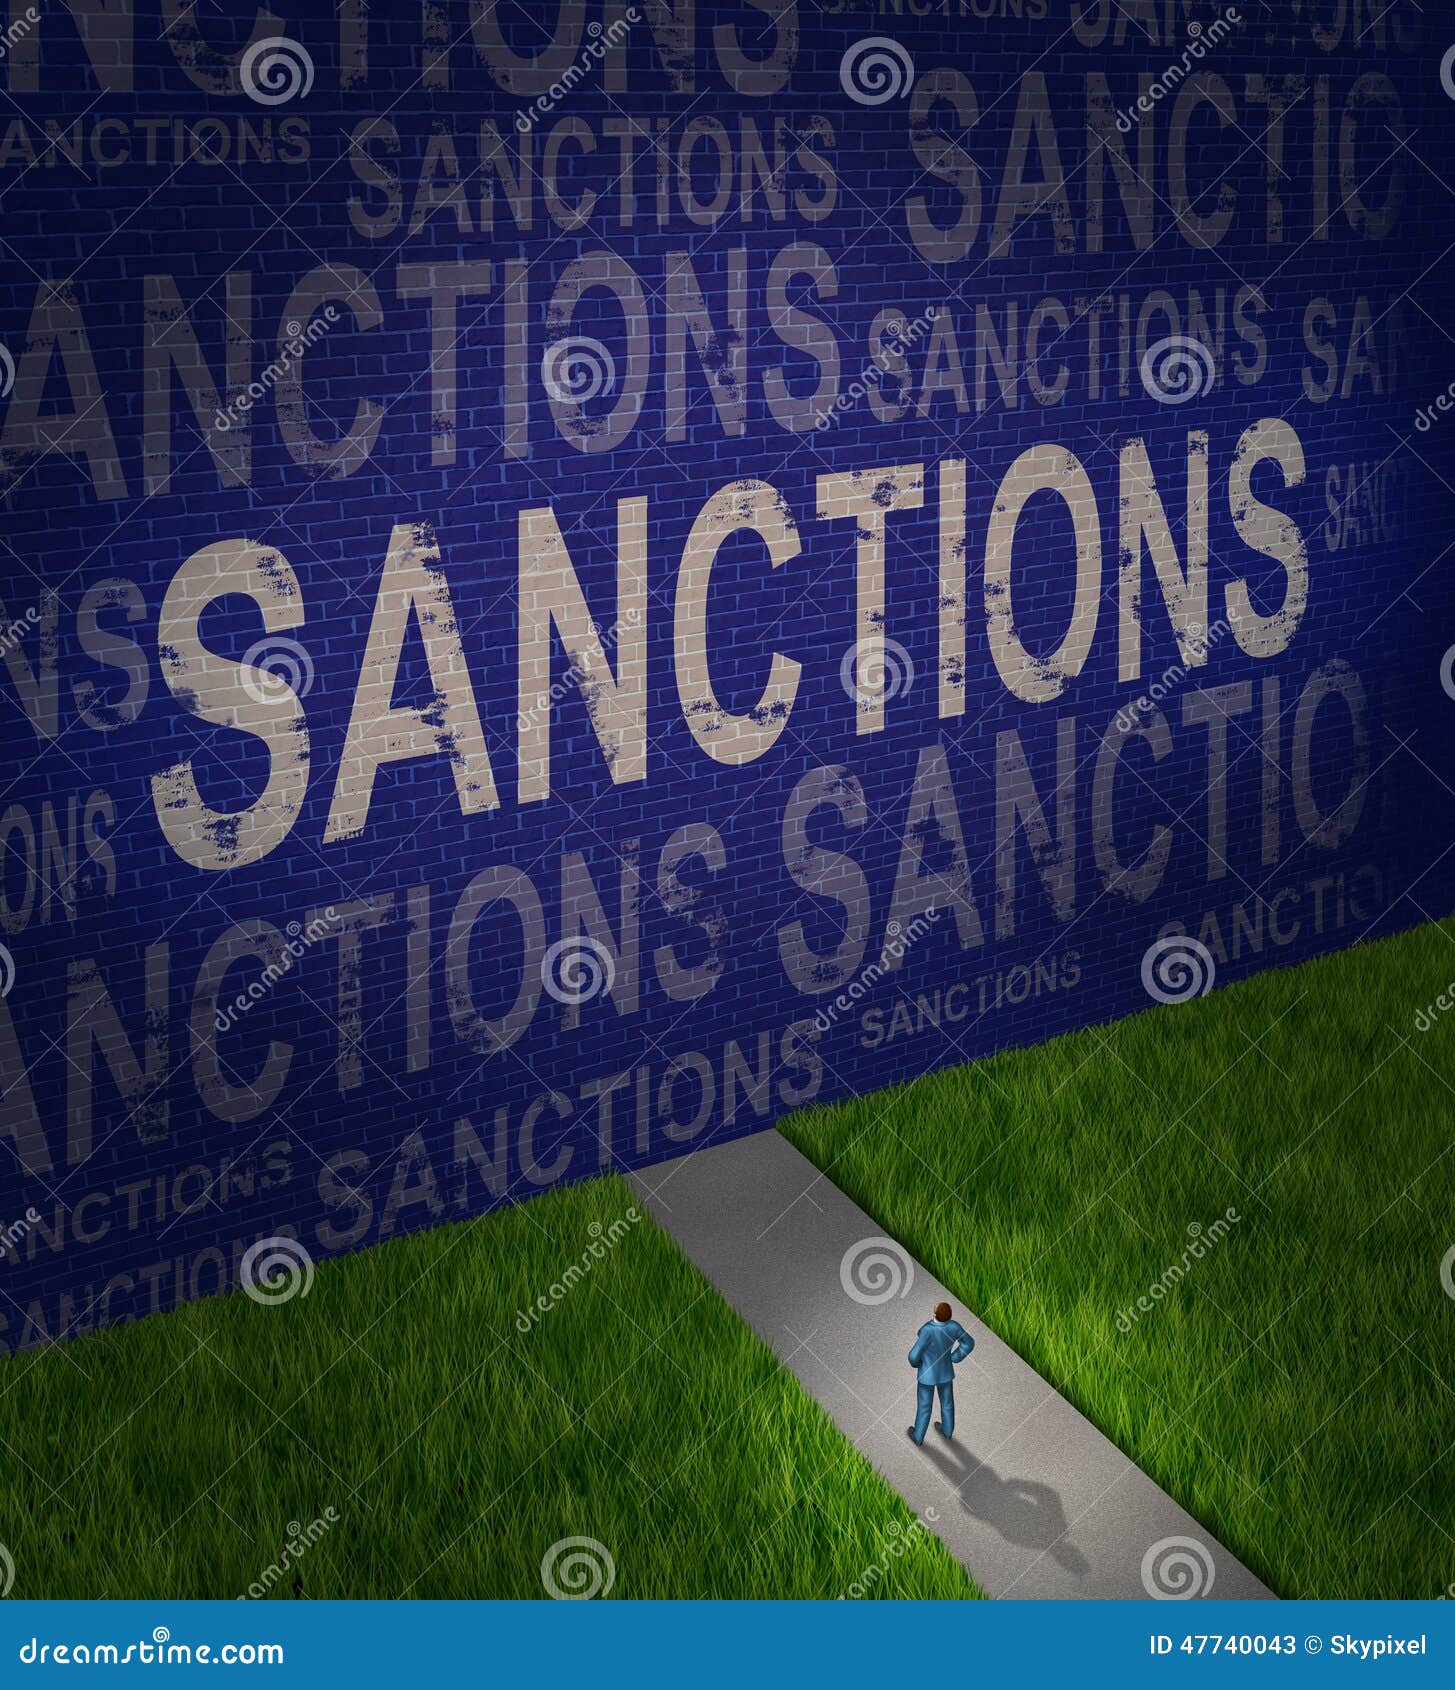 economic sanctions